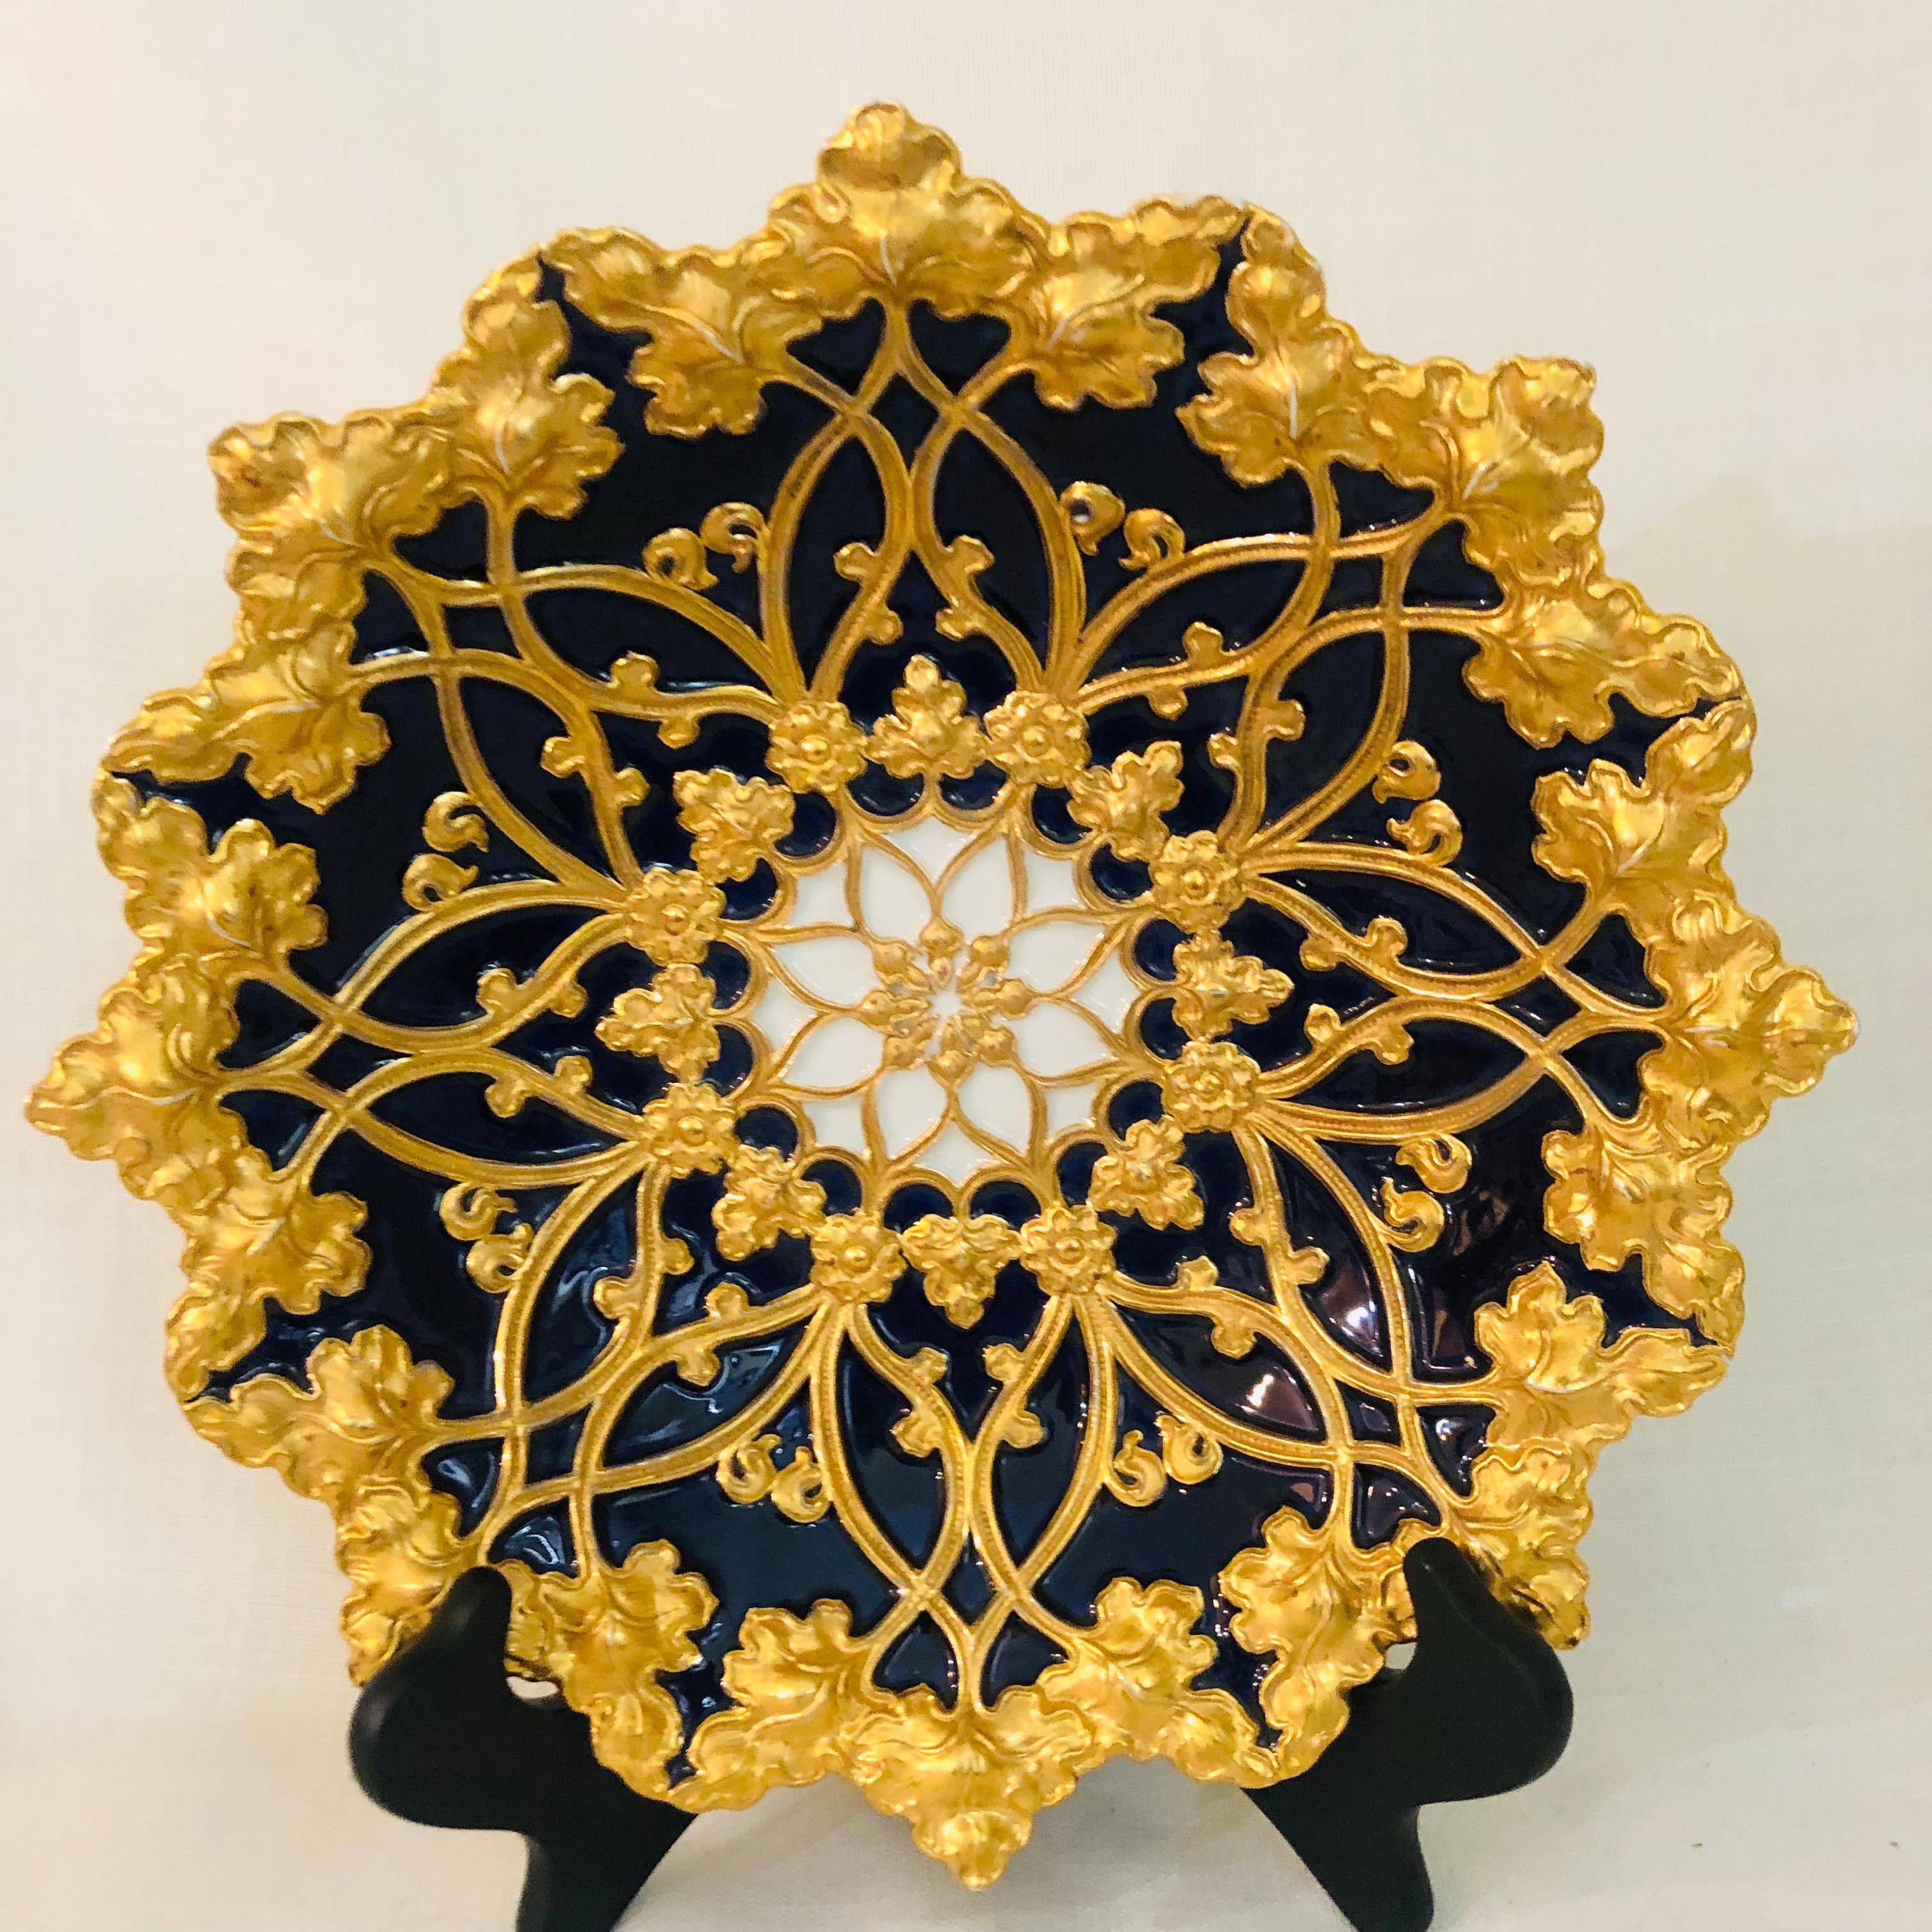 Meissener kobaltfarbener und goldener geriffelter Platzteller mit einer Umrandung aus goldenen Blättern aus den 1890er Jahren (Vergoldet)